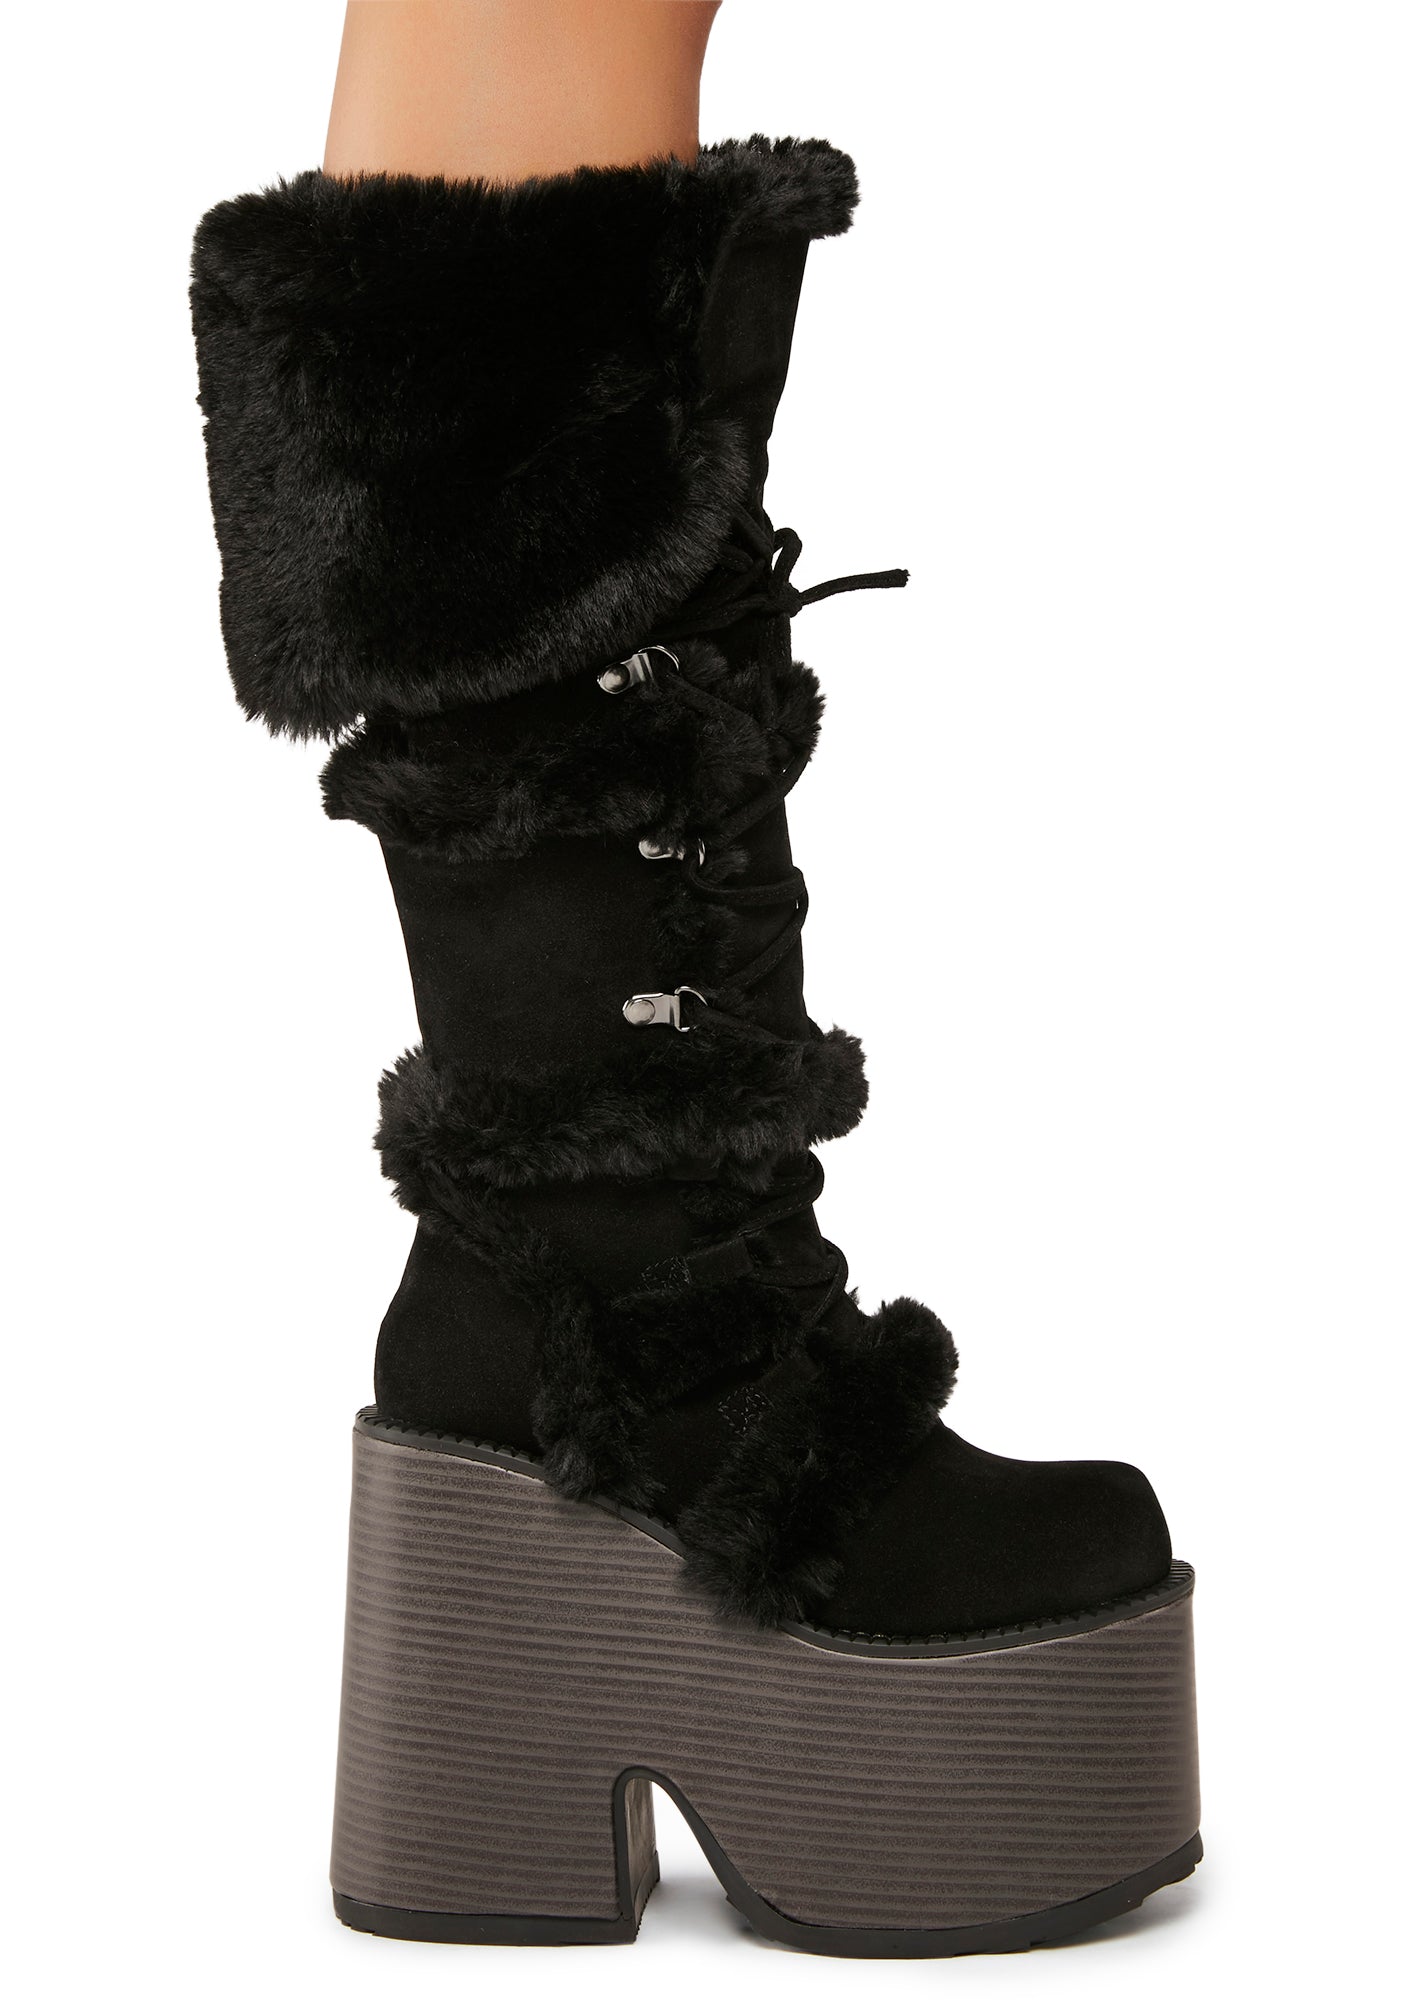 Black Platform Boots - Double Platform Boots - Faux Suede Boots